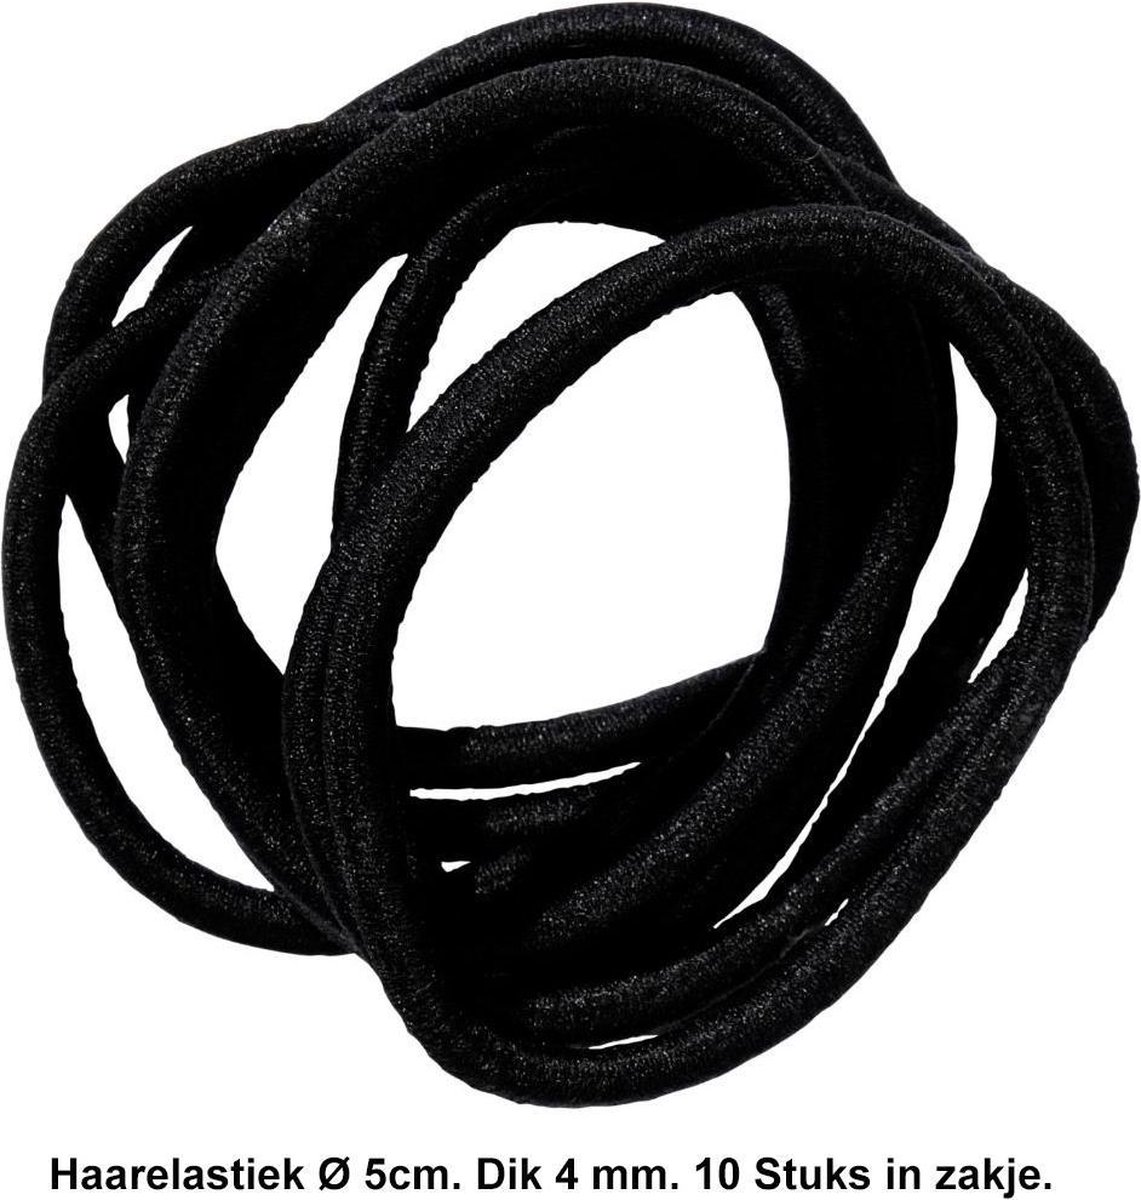 Rojafit Haarelastiekjes – Ø 5 cm. / 4 mm. dik - 10 stuks – Zwart - Rojafit